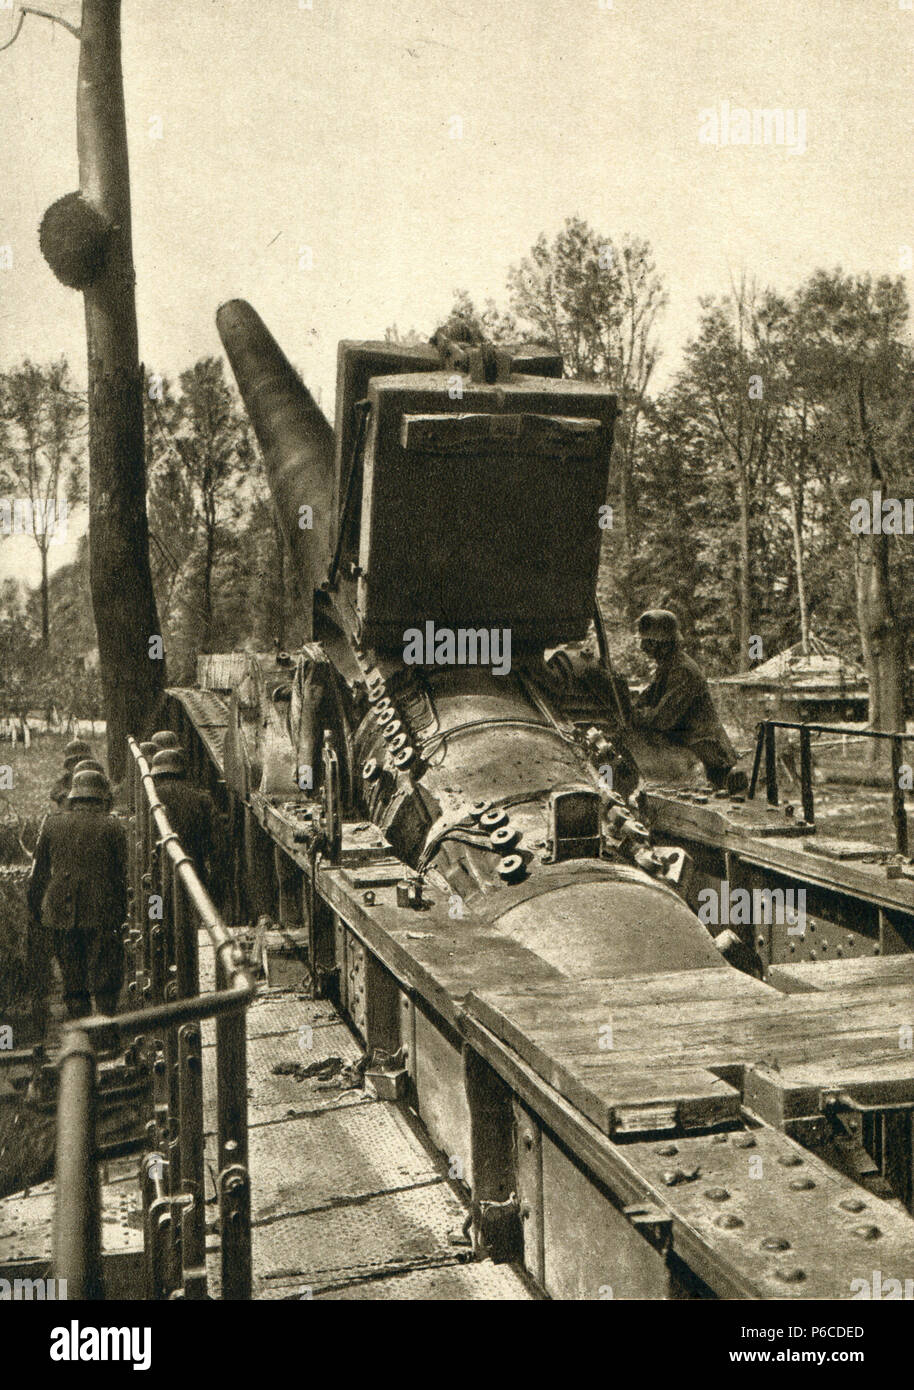 La première guerre mondiale, 38 cm SK L/45, Max, des armes à feu de fer ww1, la première guerre mondiale, la première guerre mondiale Banque D'Images